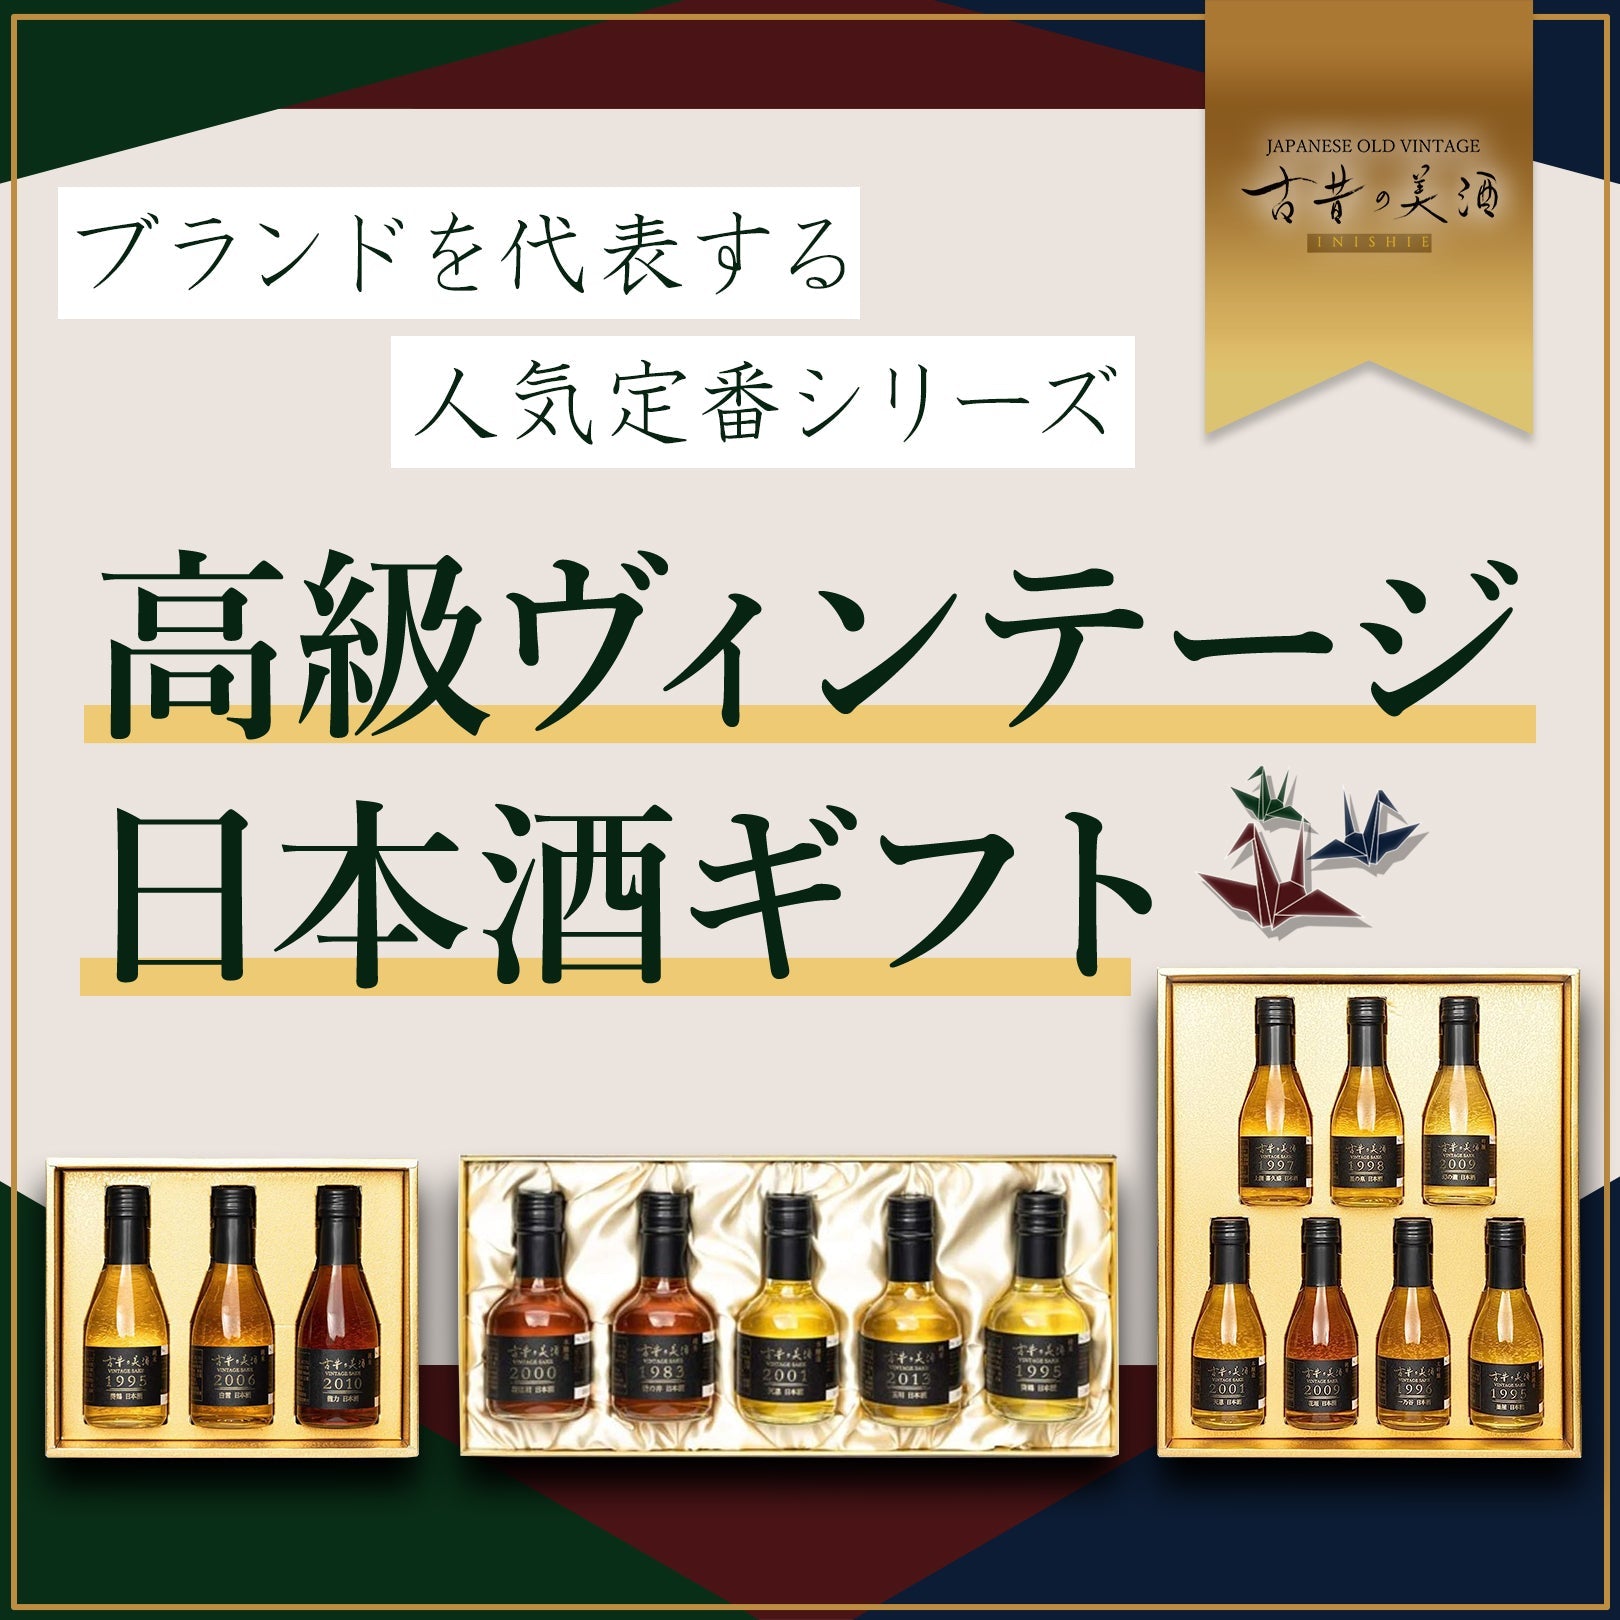 美 -BI- 』Vintage1983,1995 ,2000,2001,2013 日本酒5銘柄セット